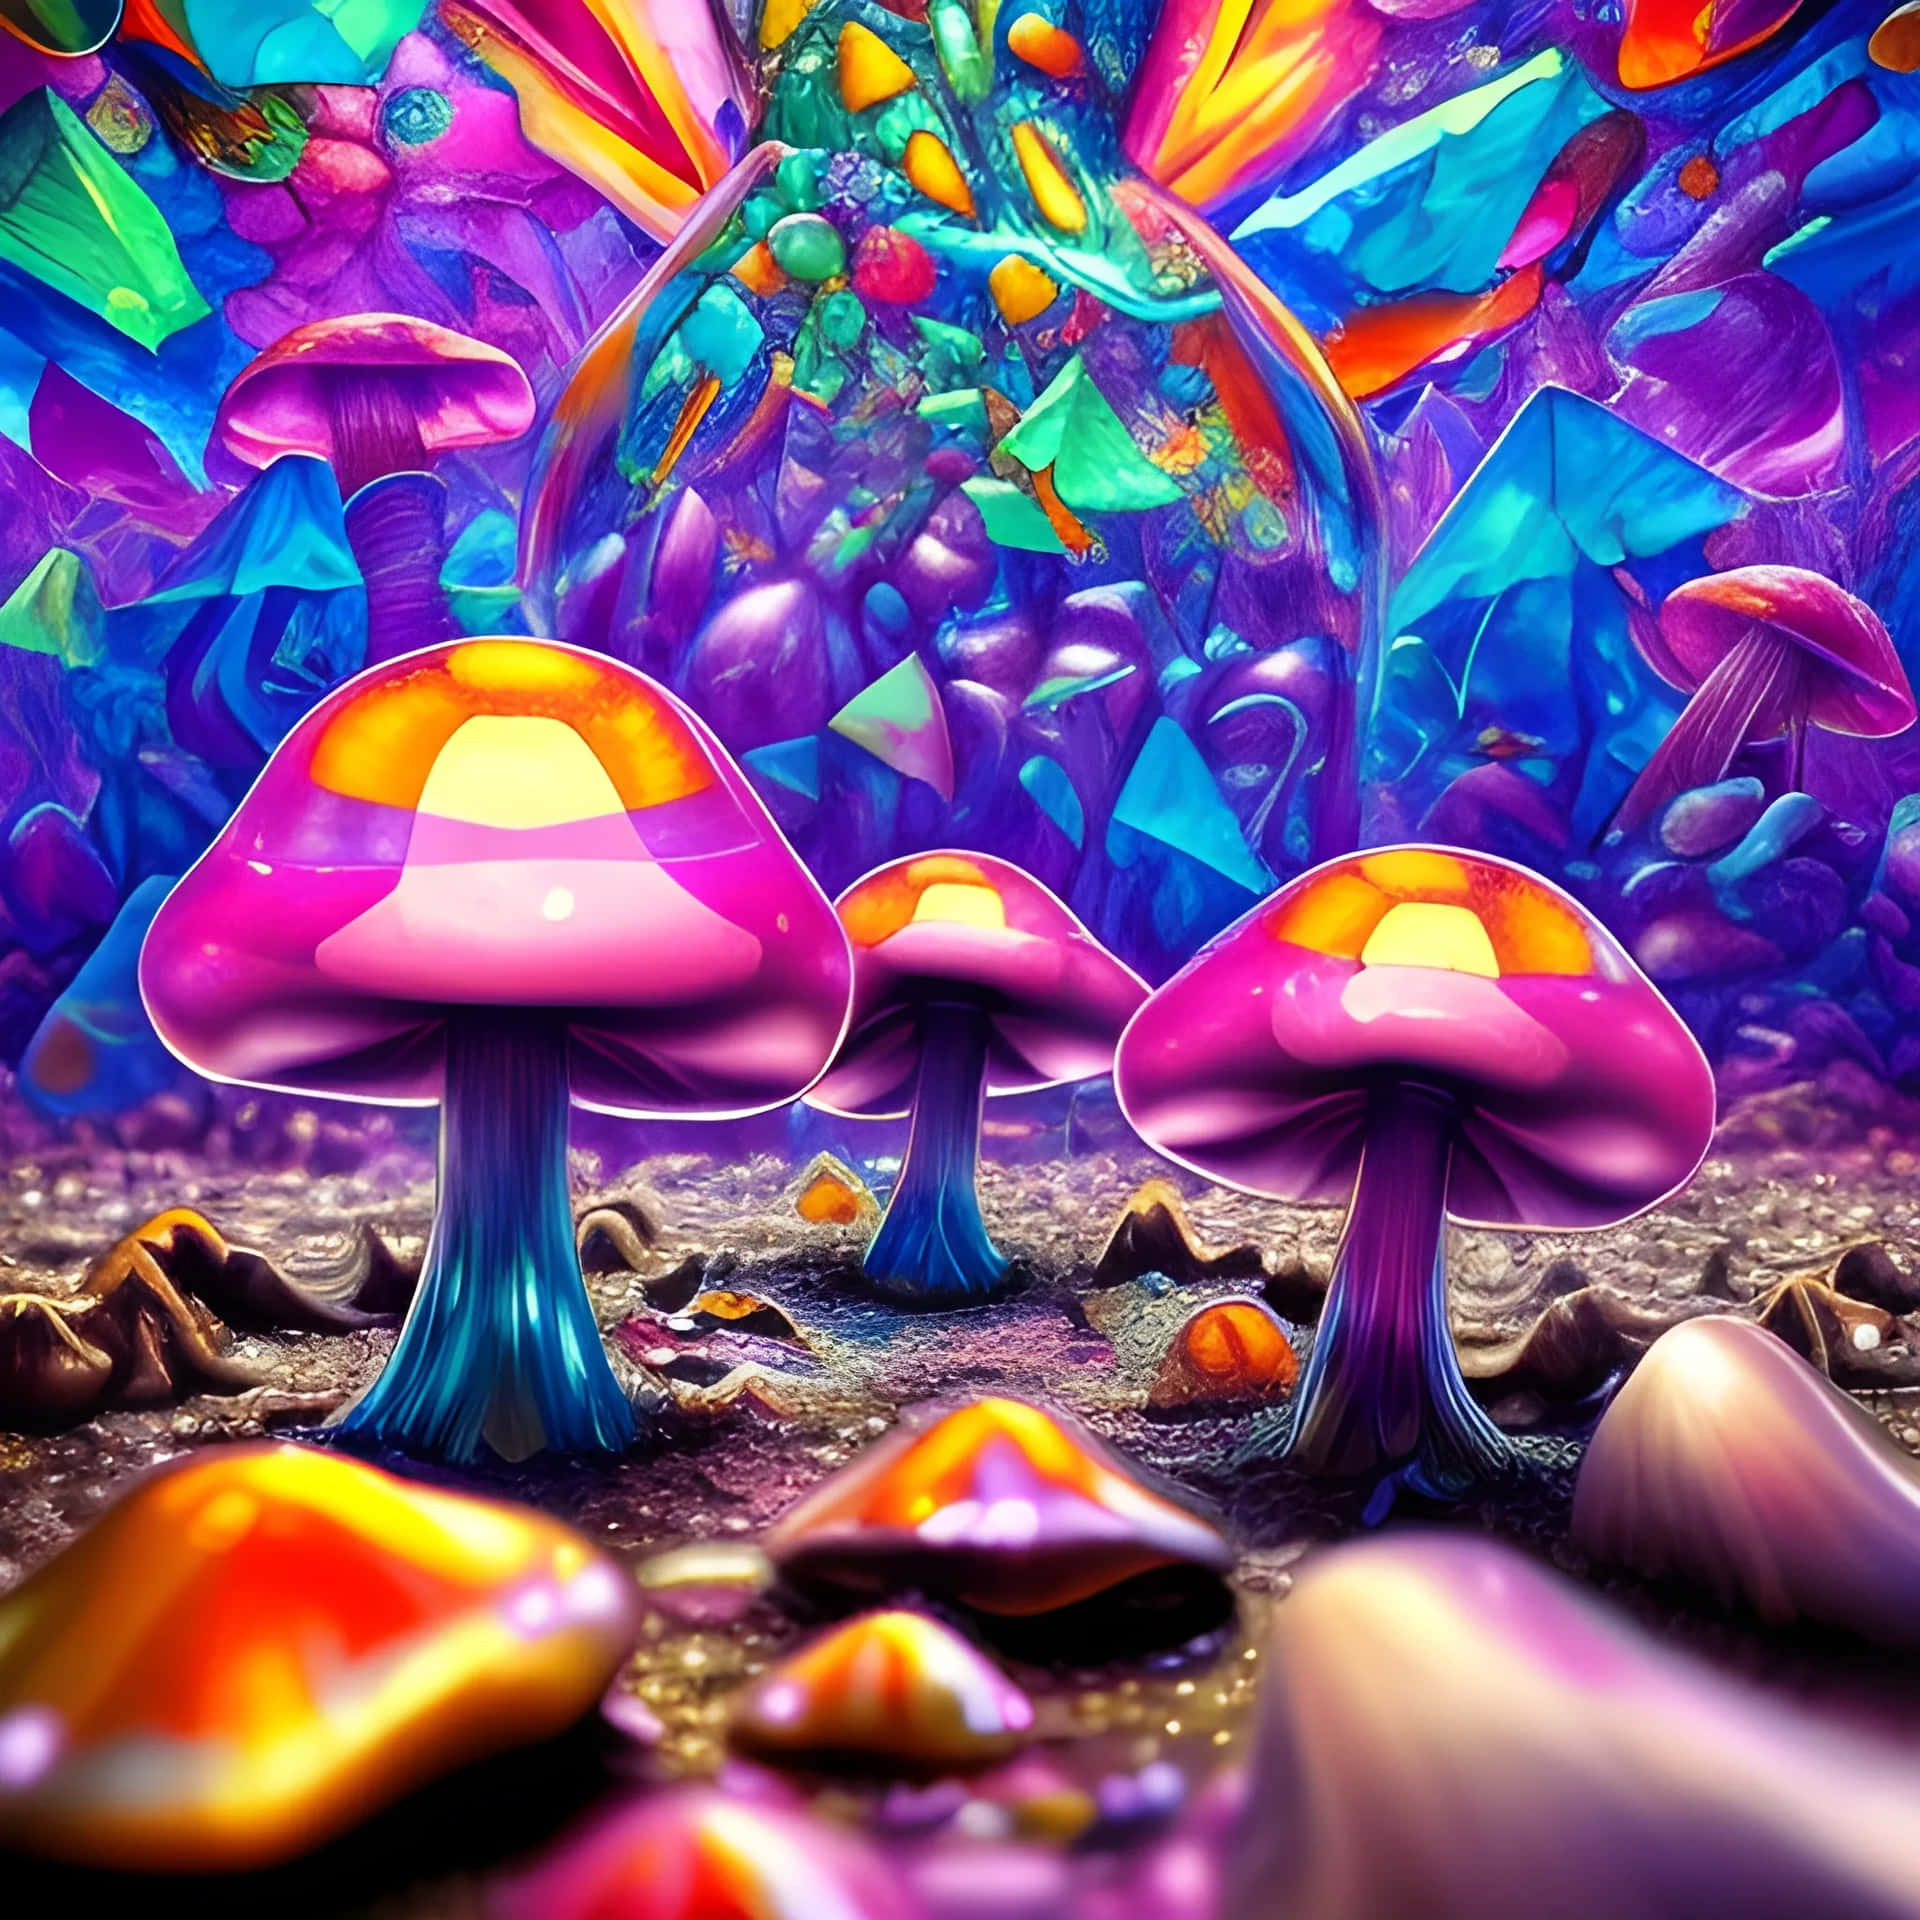 Vibrant Fantasy Mushroom Forest Wallpaper